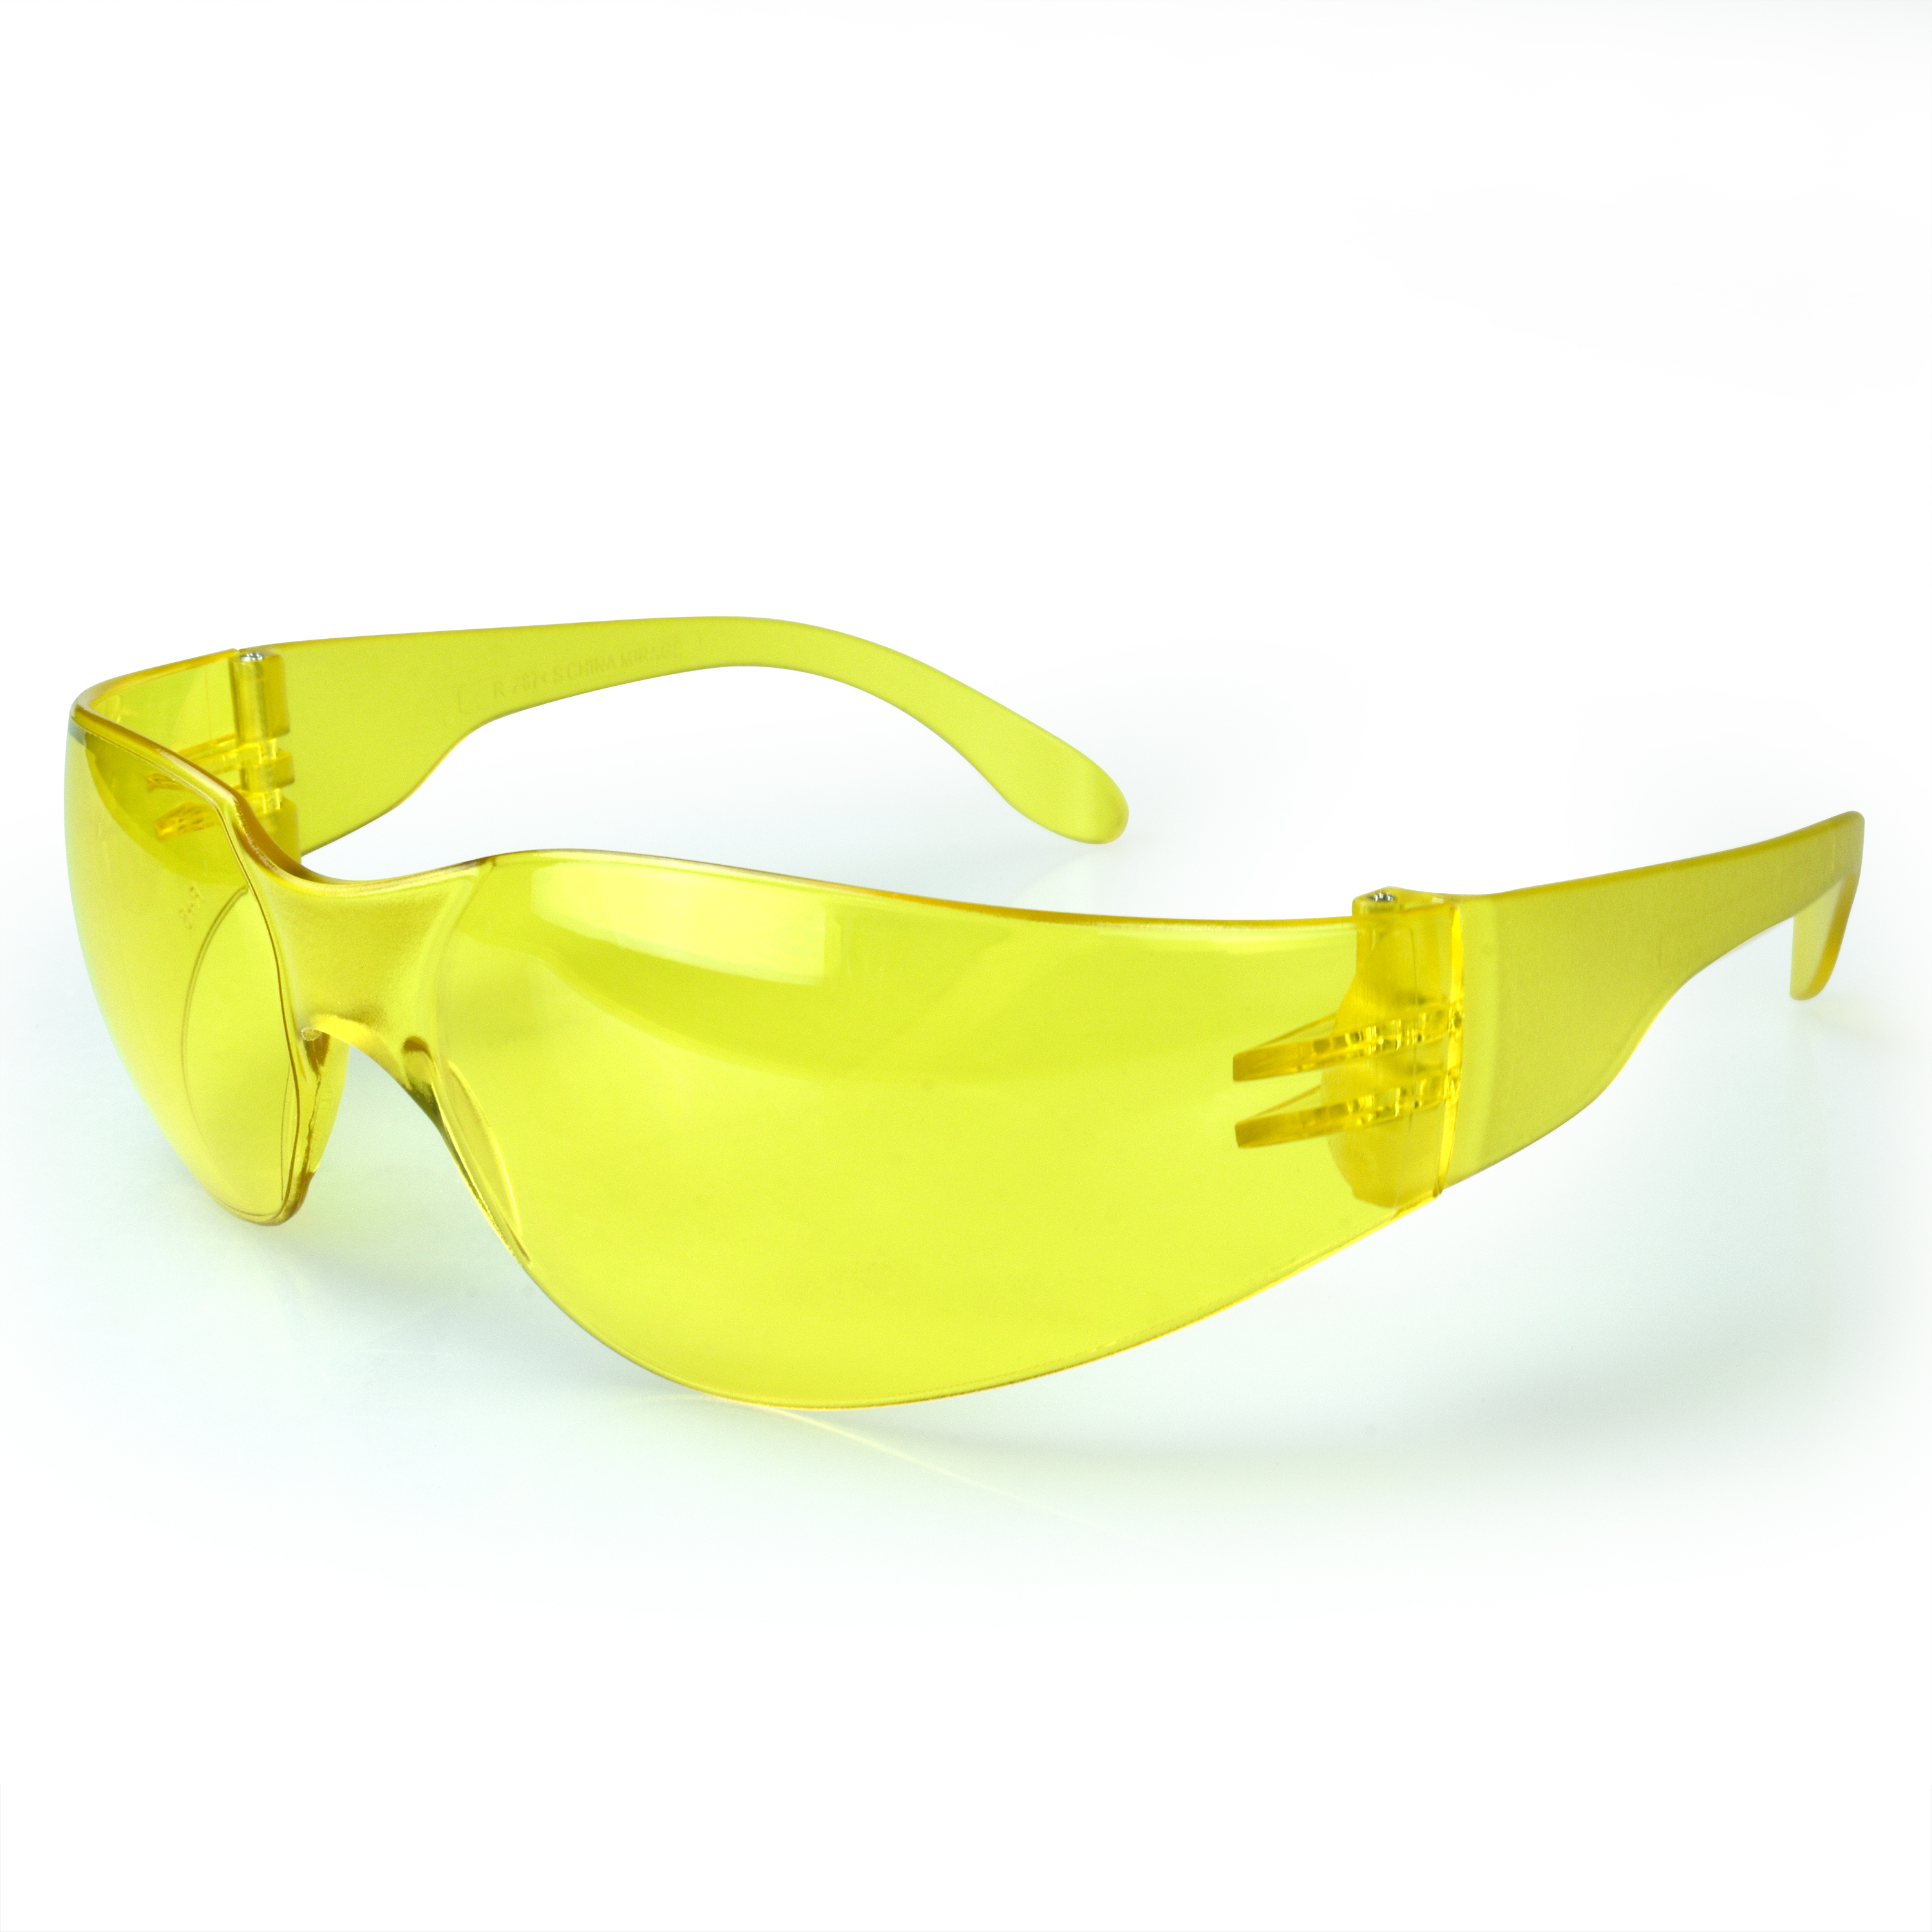 Mirage™ Safety Eyewear - Amber Frame - Amber Lens - Tinted Lens